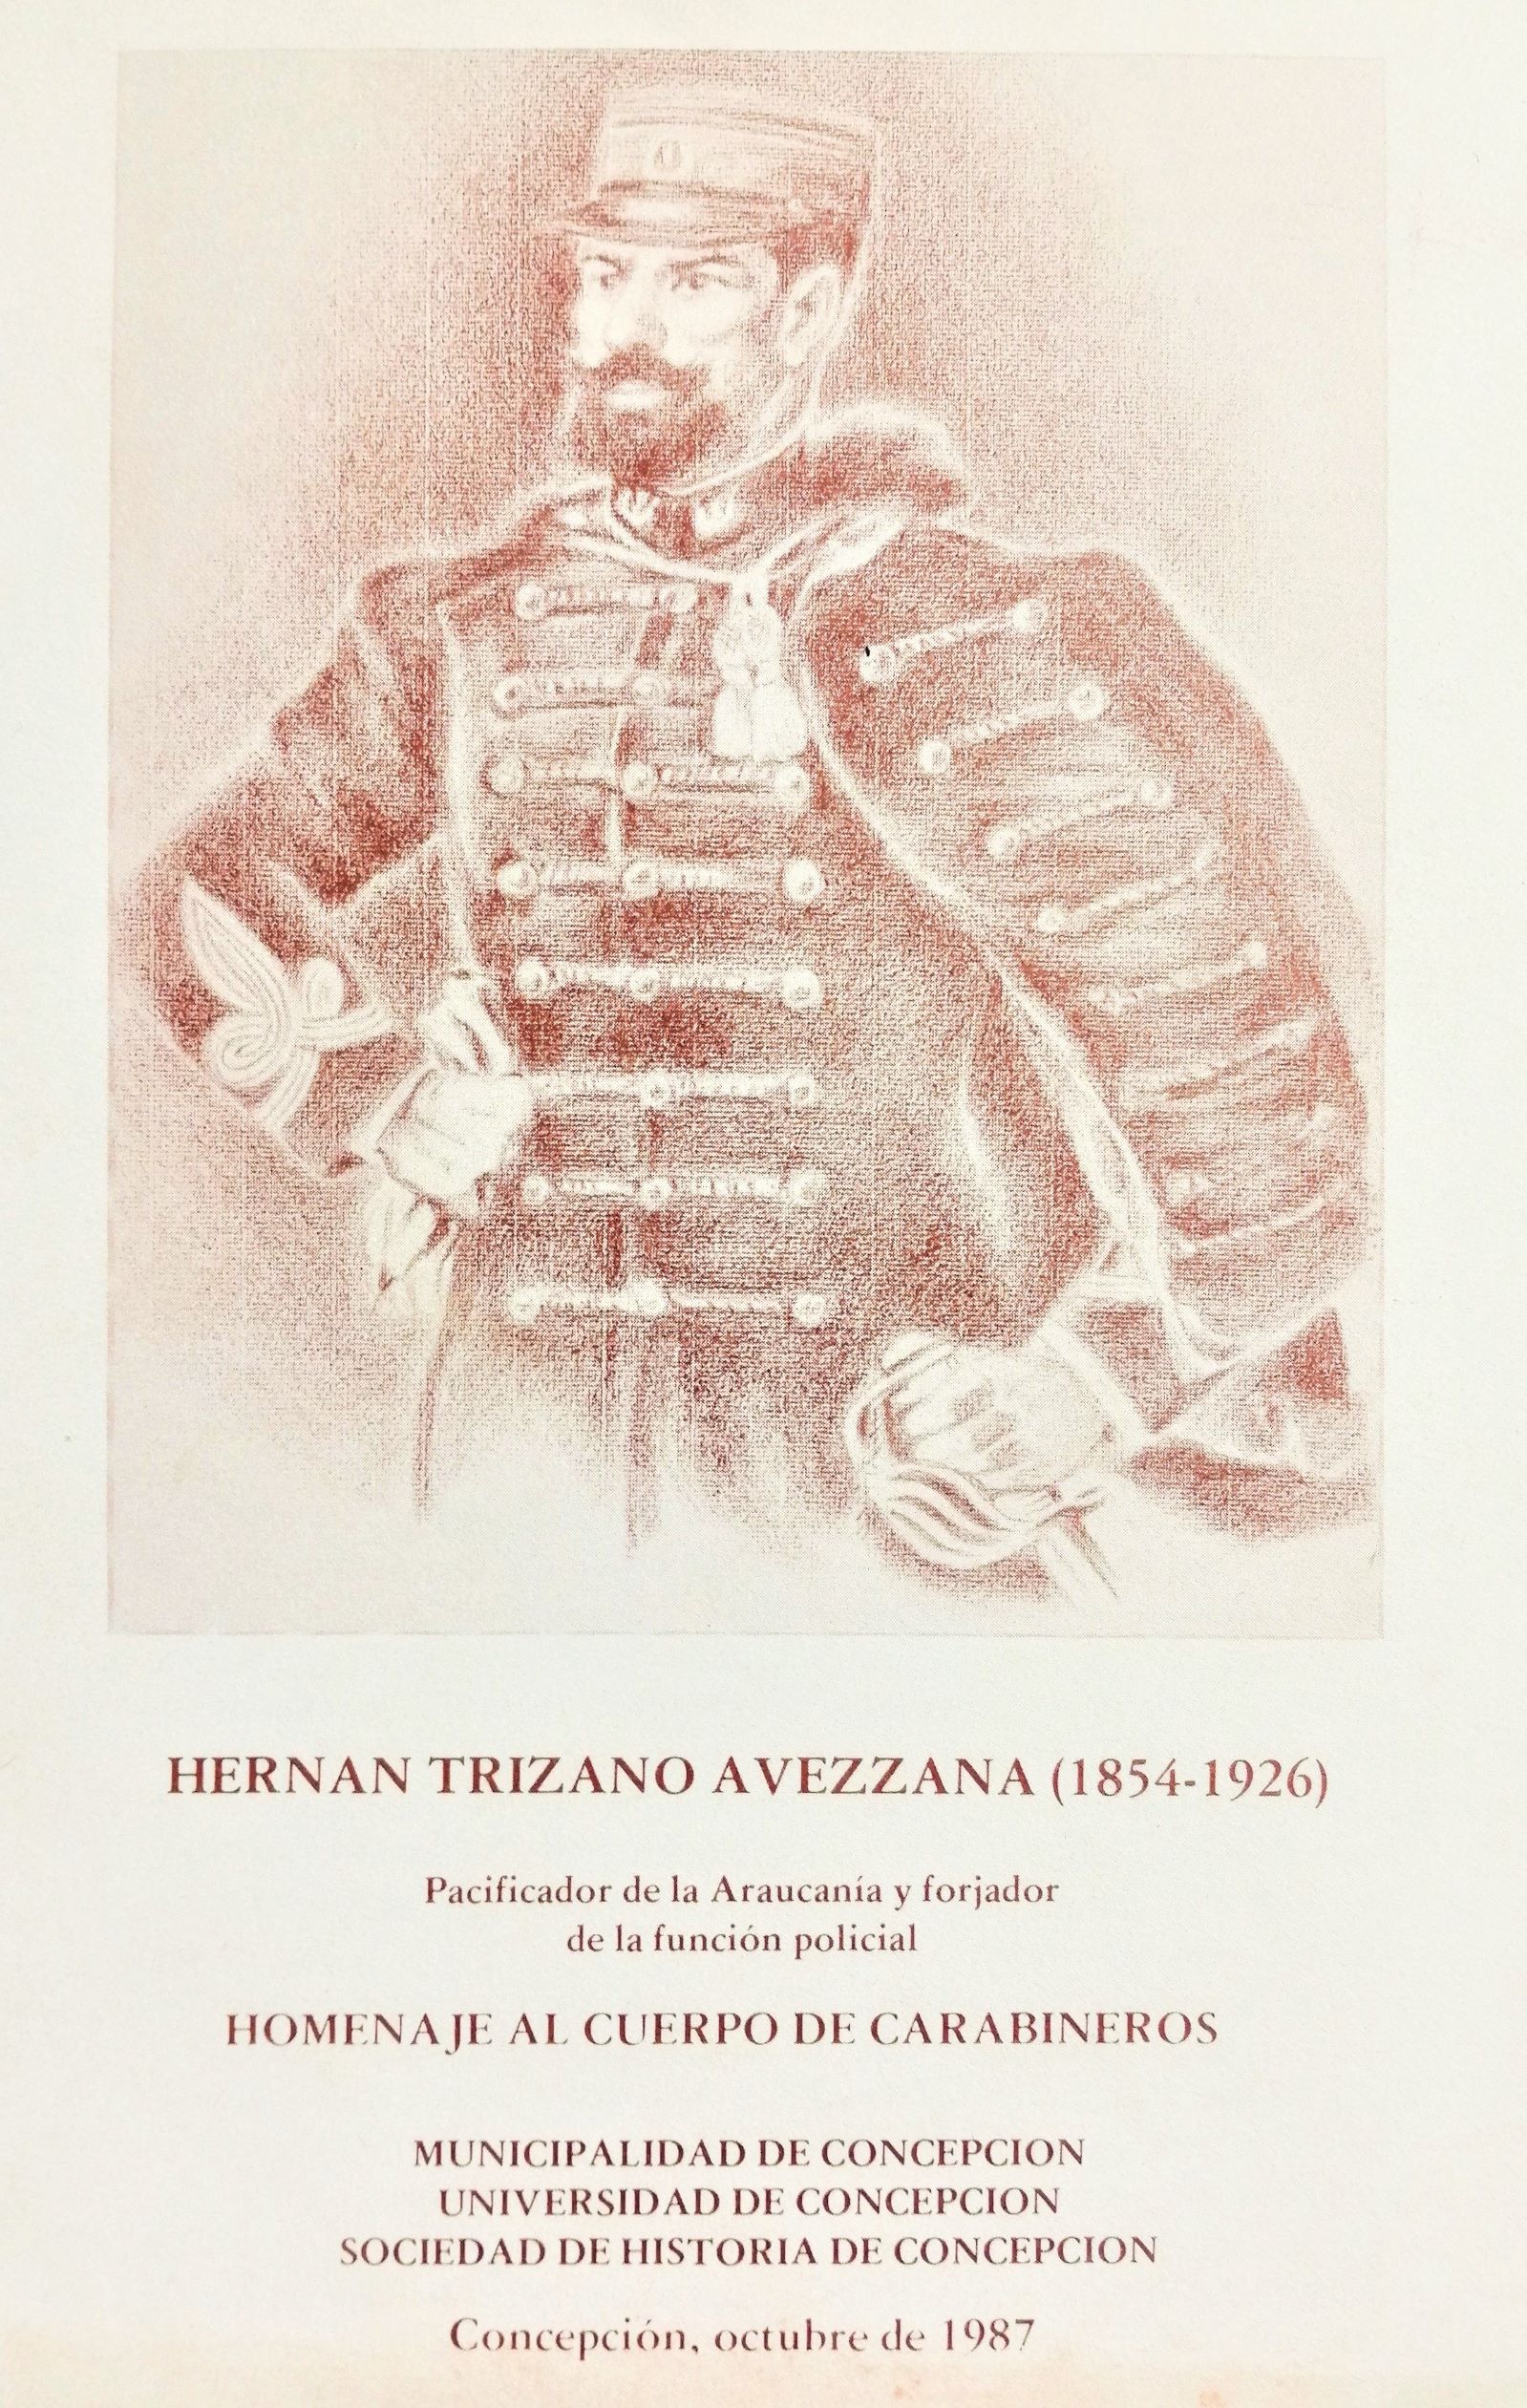 Hernán Trizano Avezzana (1854-1926). Pacificador de la Araucanía